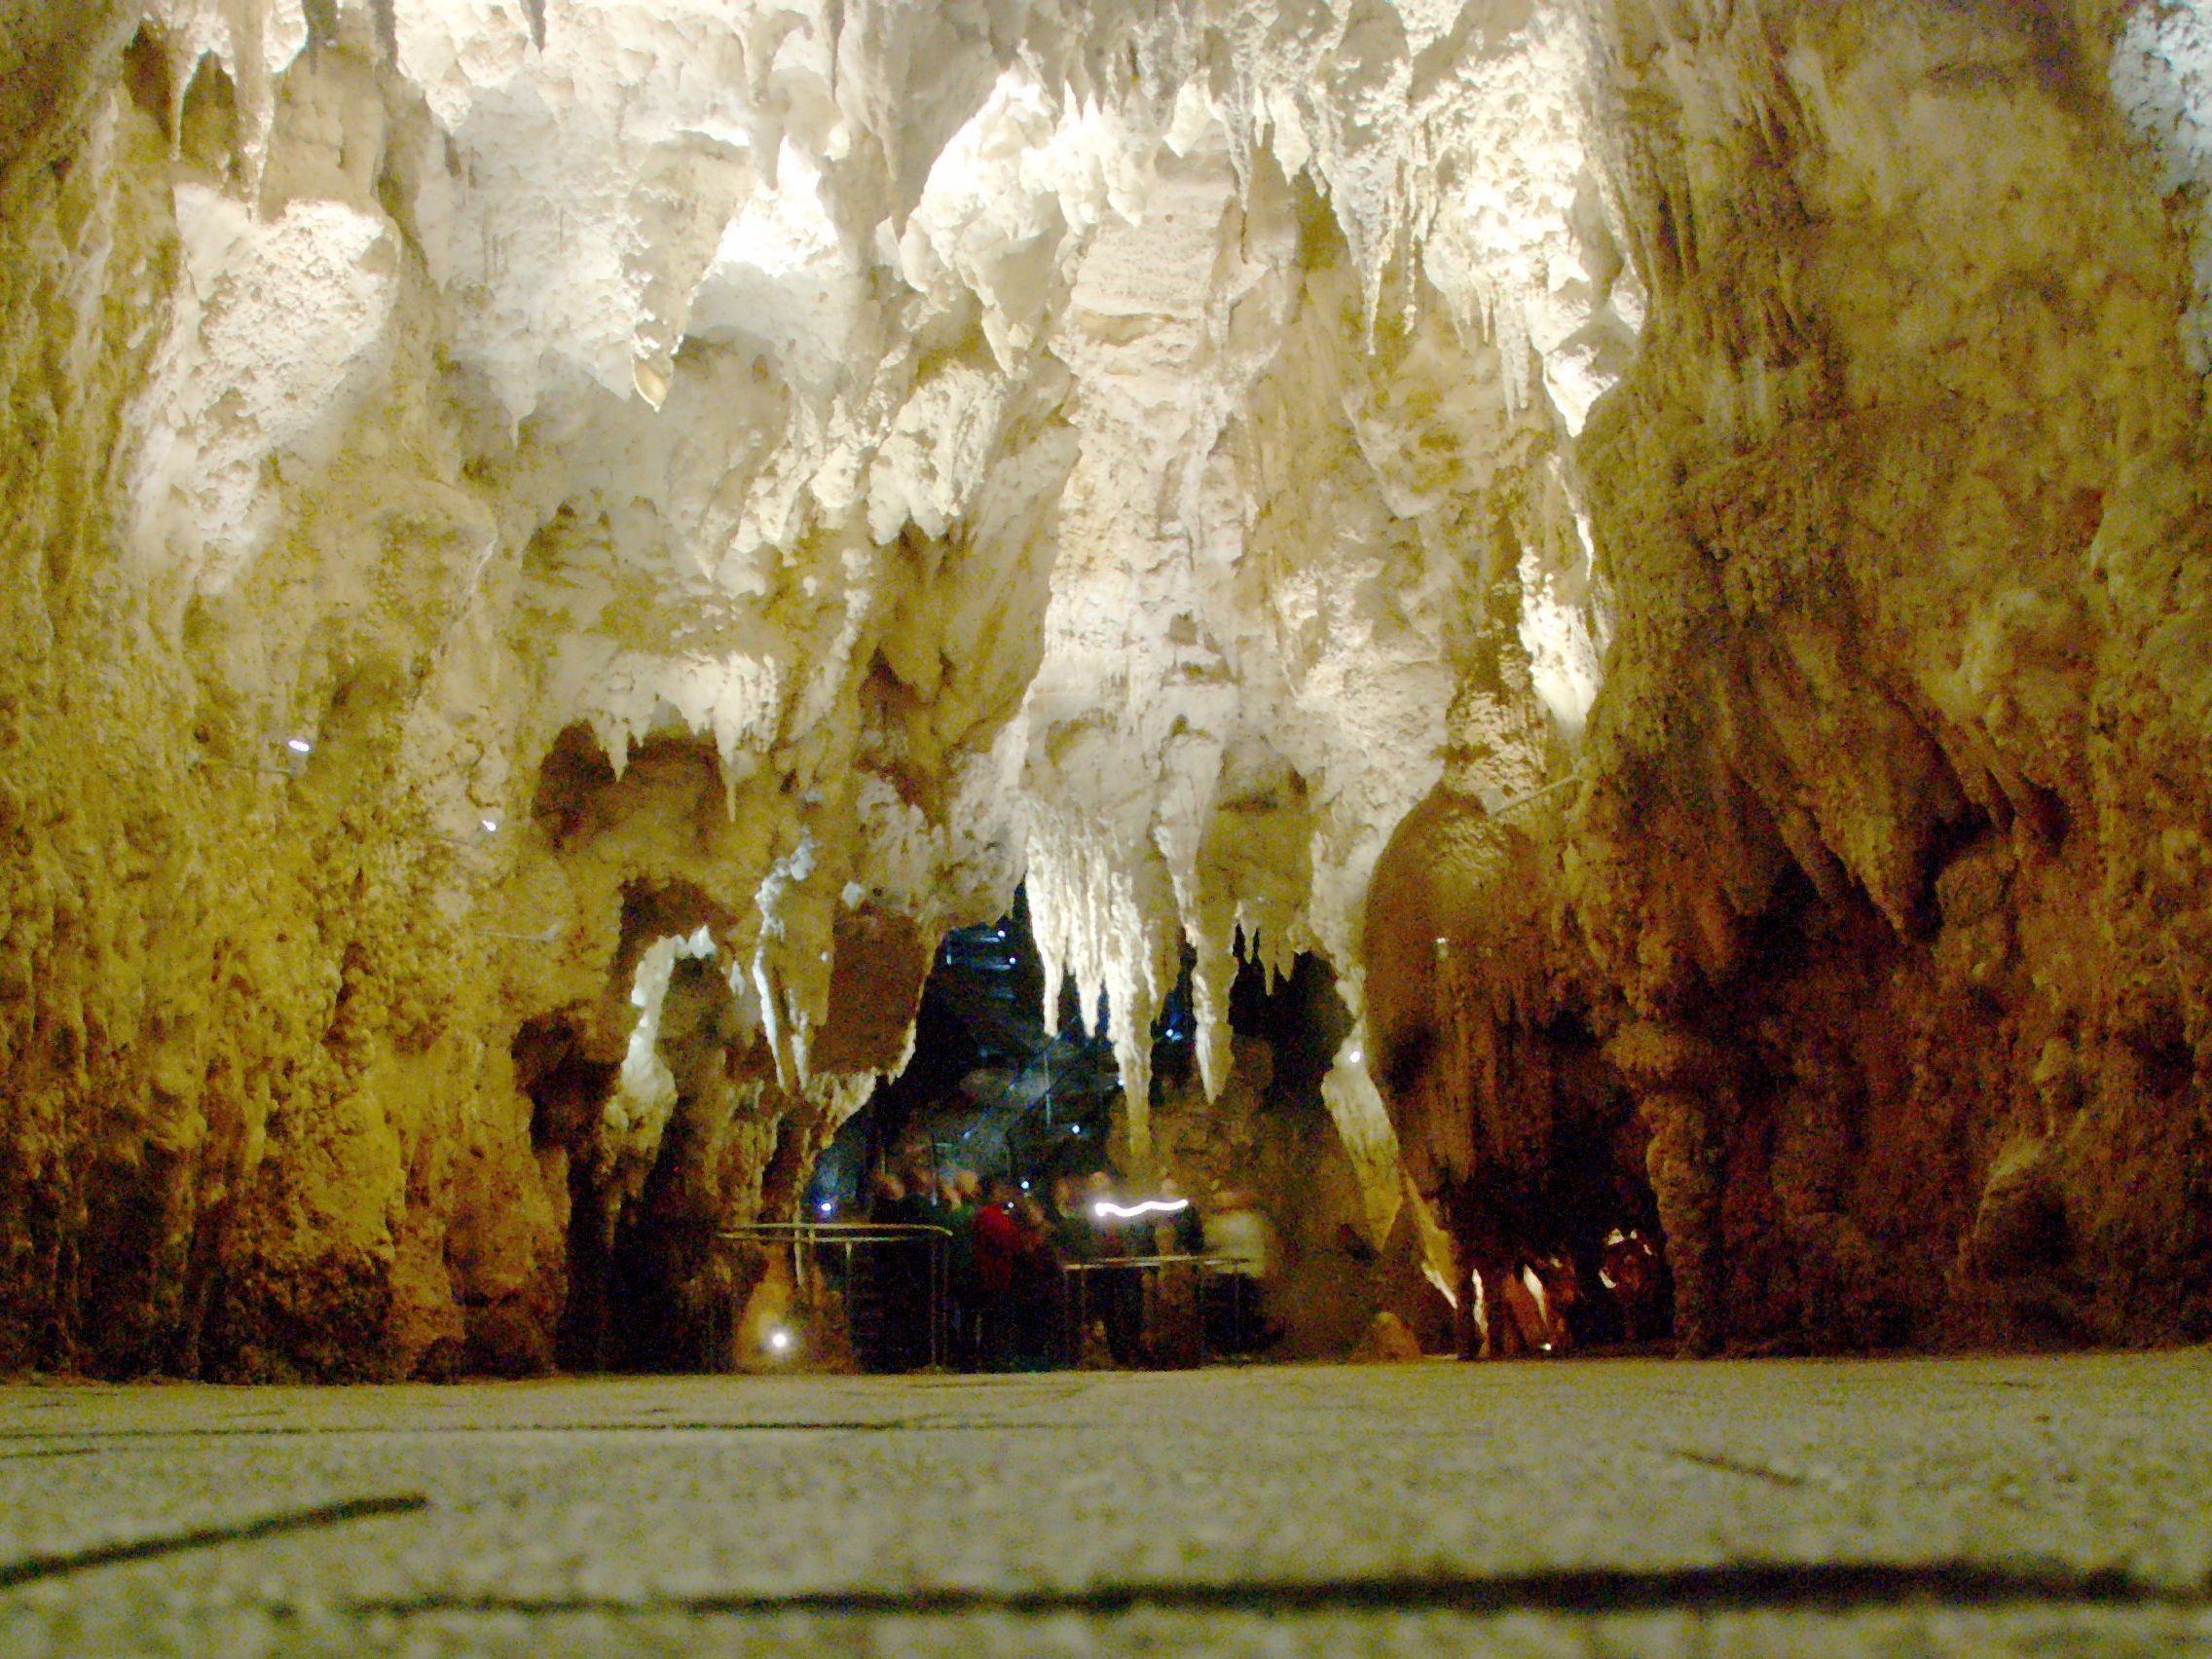 Светящиеся пещеры Вайтомо